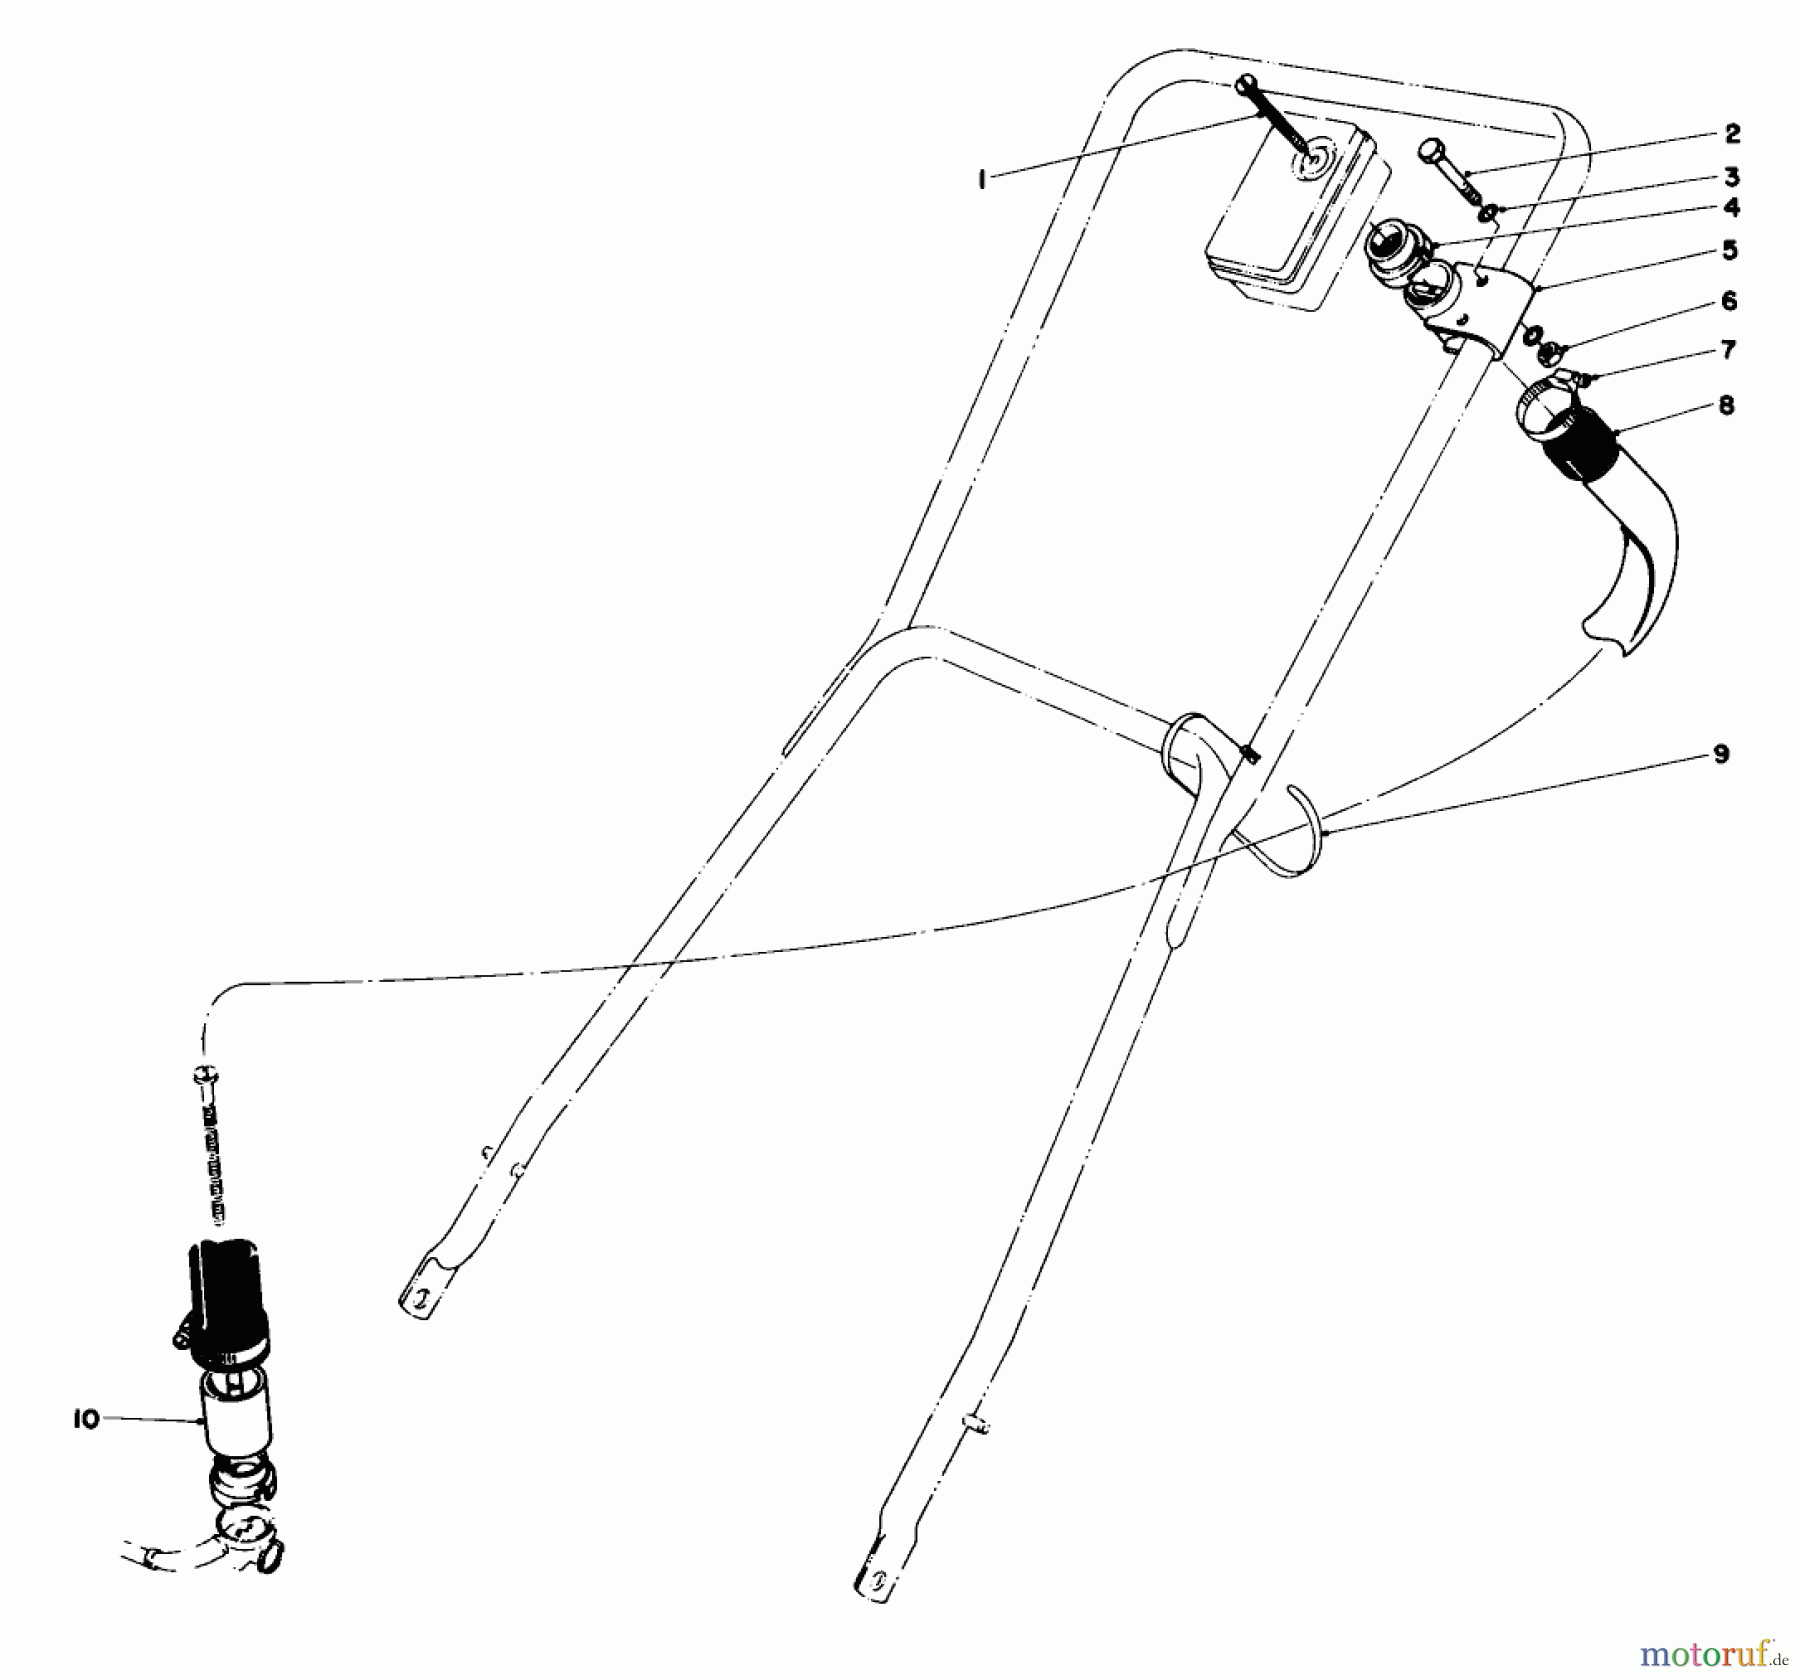  Toro Neu Mowers, Walk-Behind Seite 2 23177 - Toro Lawnmower, 1976 (6000001-6999999) REMOTE AIR CLEANER KIT NO. 28-0580